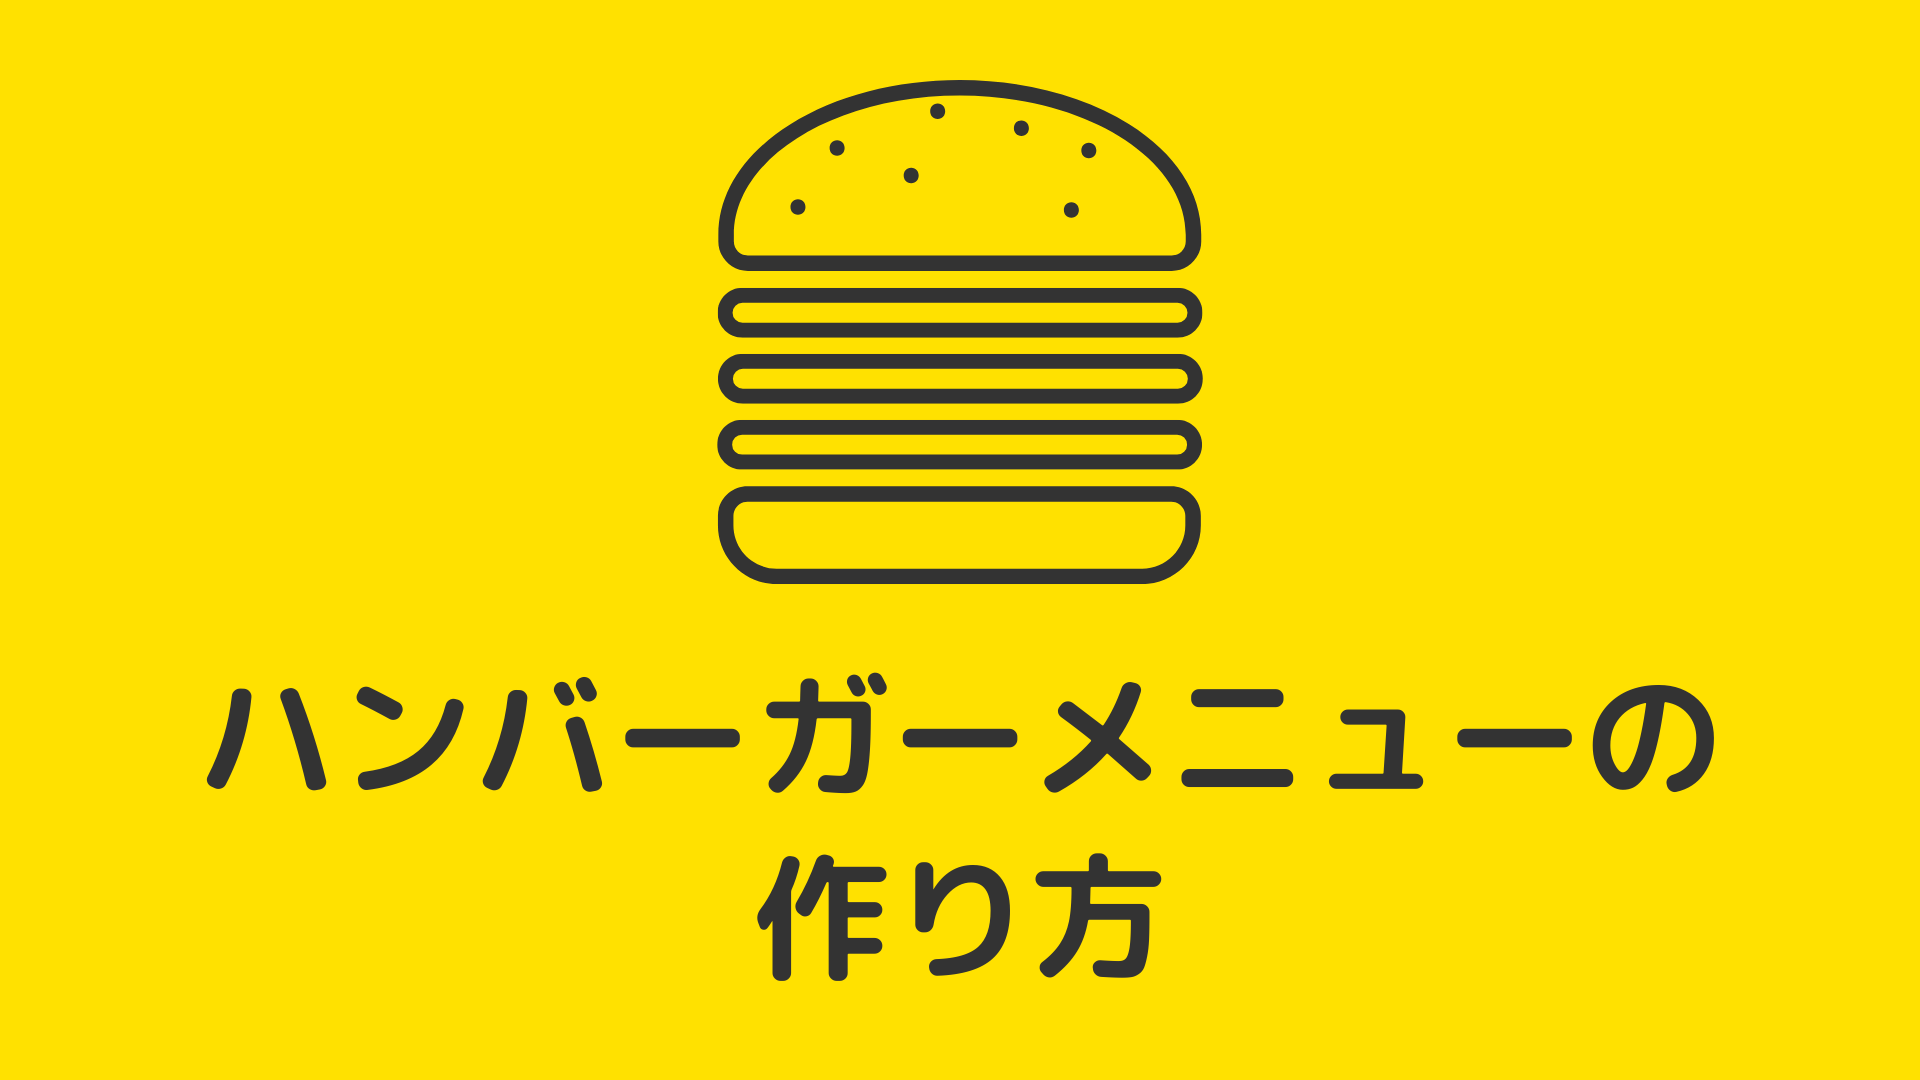 ハンバーガーメニューの作り方 (jQuery編)